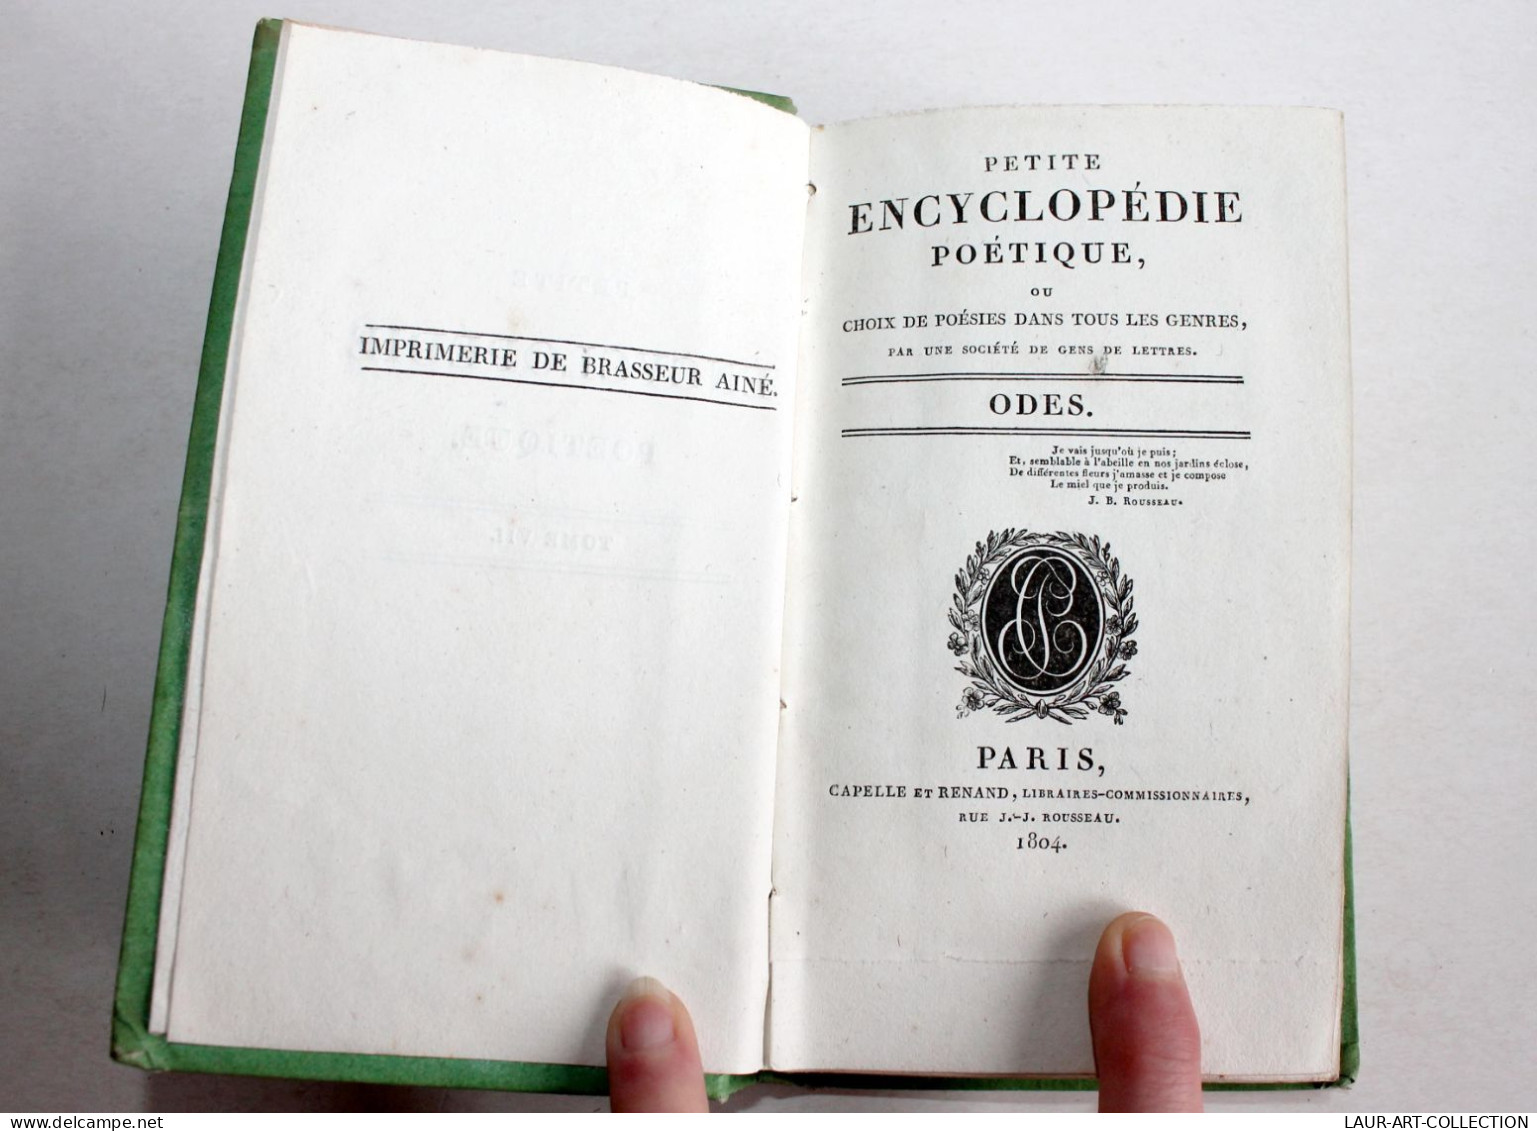 PETITE ENCYCLOPEDIE POETIQUE CHOIX POESIES TOUS GENRES CONTENANT 50 ODES 1804 T7 / ANCIEN LIVRE XIXe SIECLE (1803.184) - Franse Schrijvers